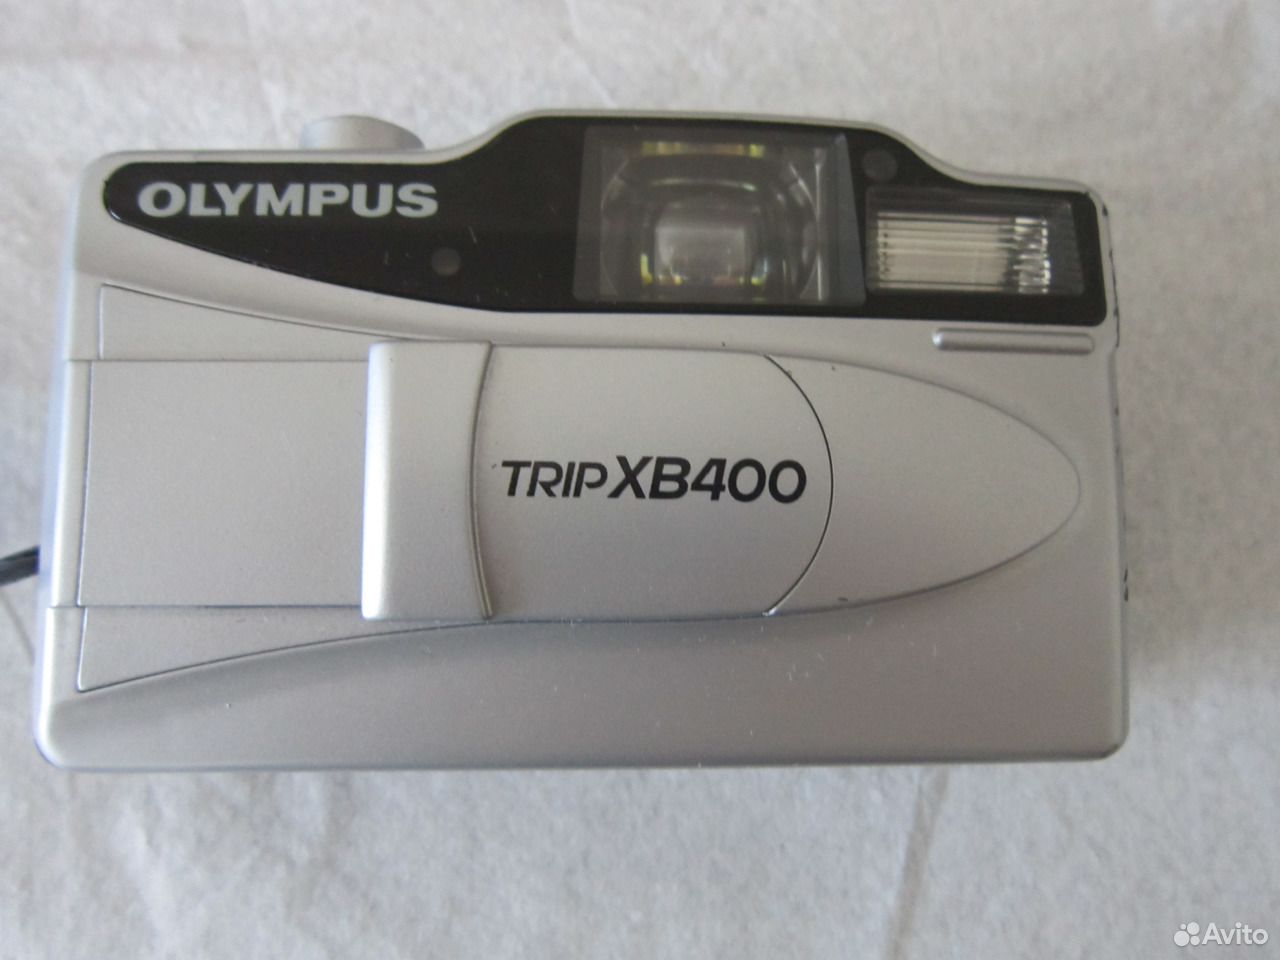 olympus xb400